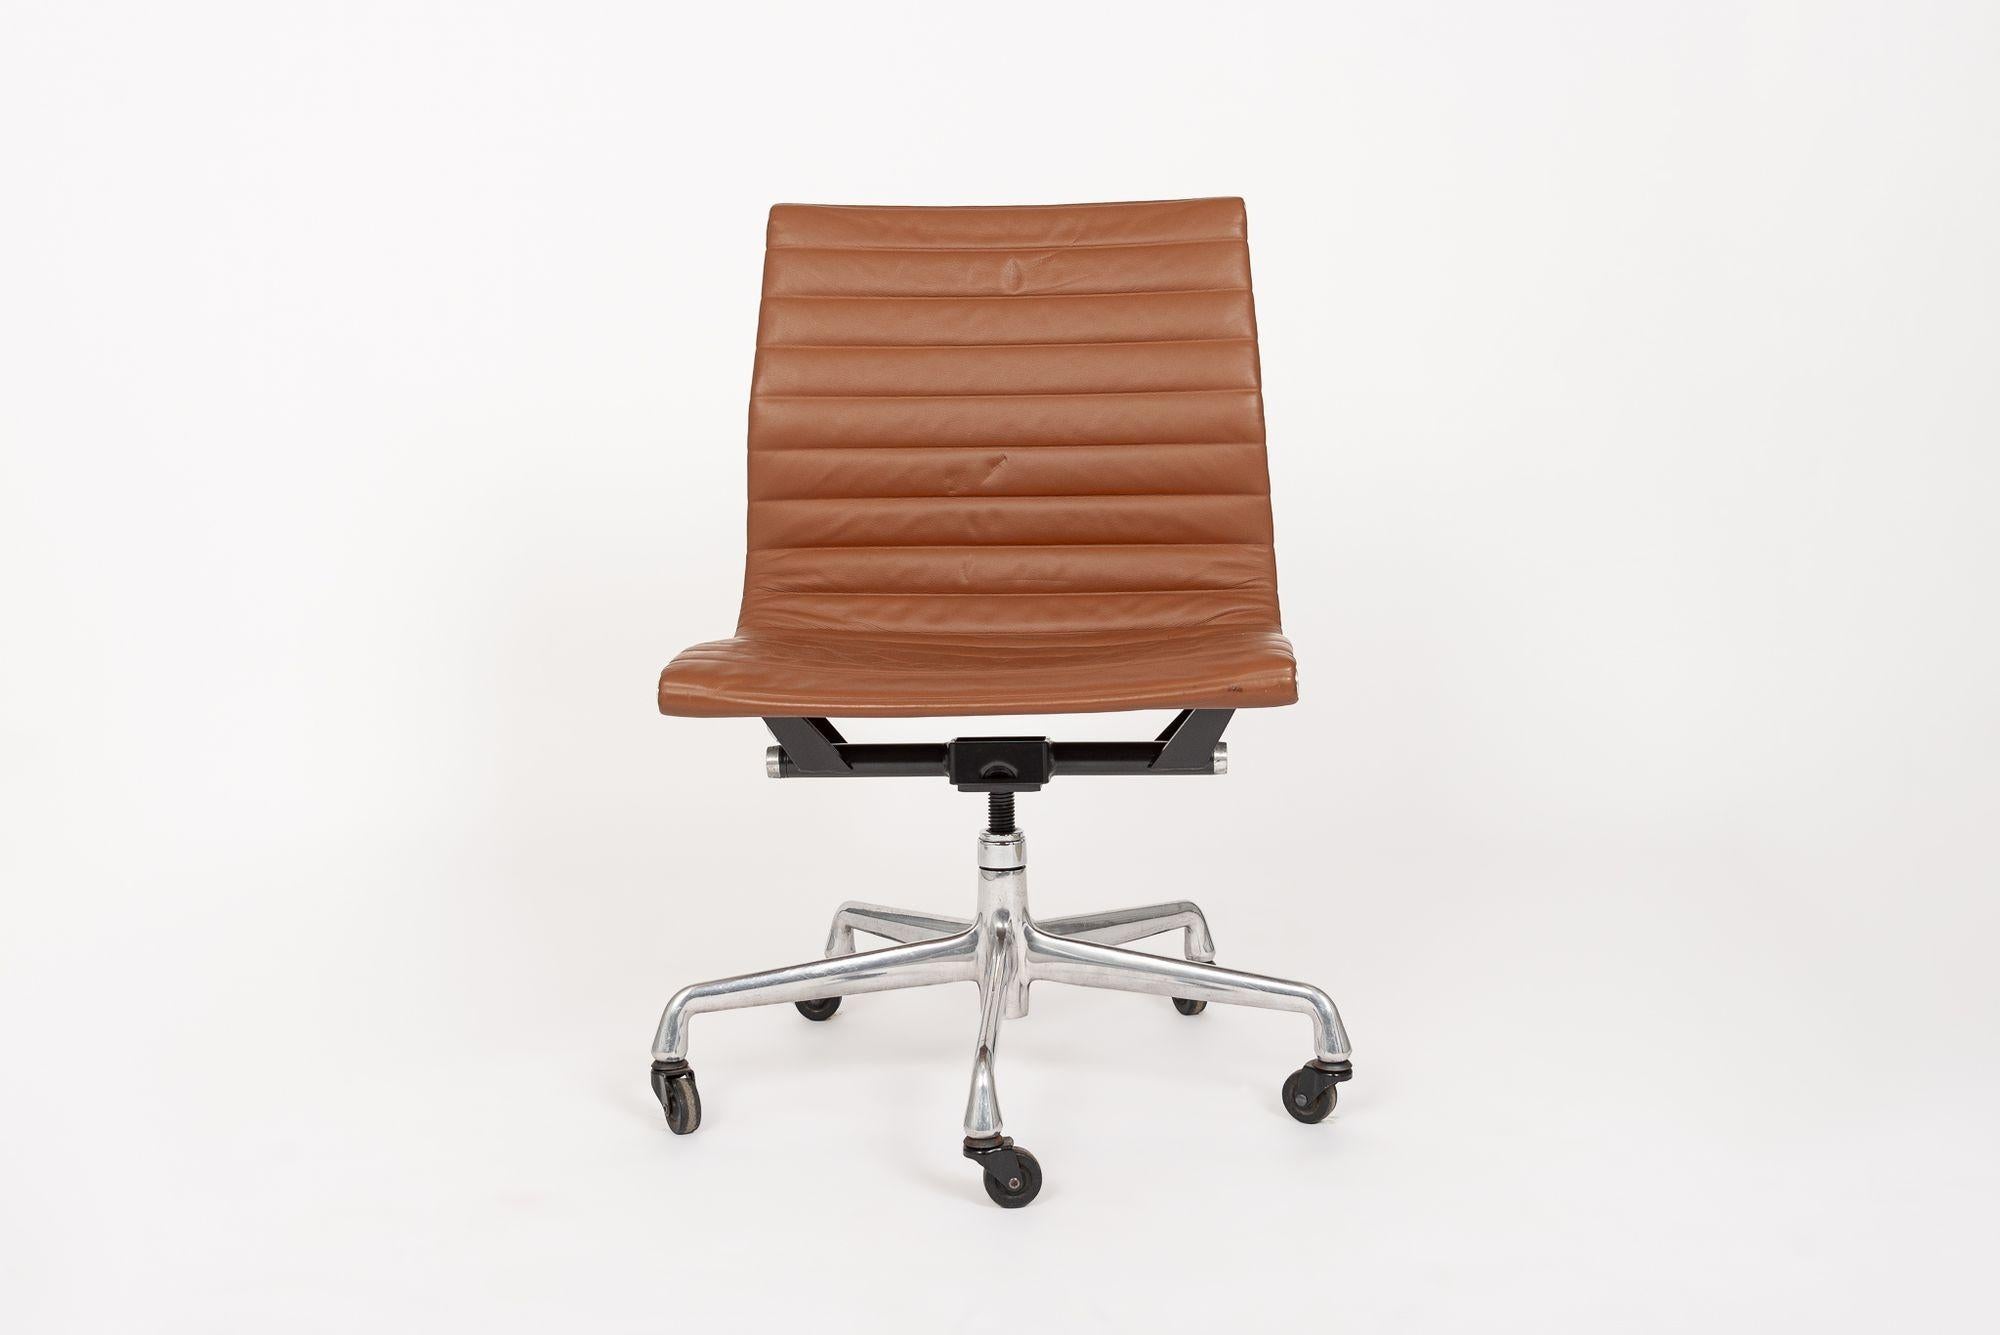 La silla de oficina lateral Aluminum Group Thin Pad Management, diseñada por Charles & Ray Eames para Herman Miller, pertenece a la colección Eames Aluminum Group. Estas distintivas sillas fueron el resultado de la experimentación de los Eames con